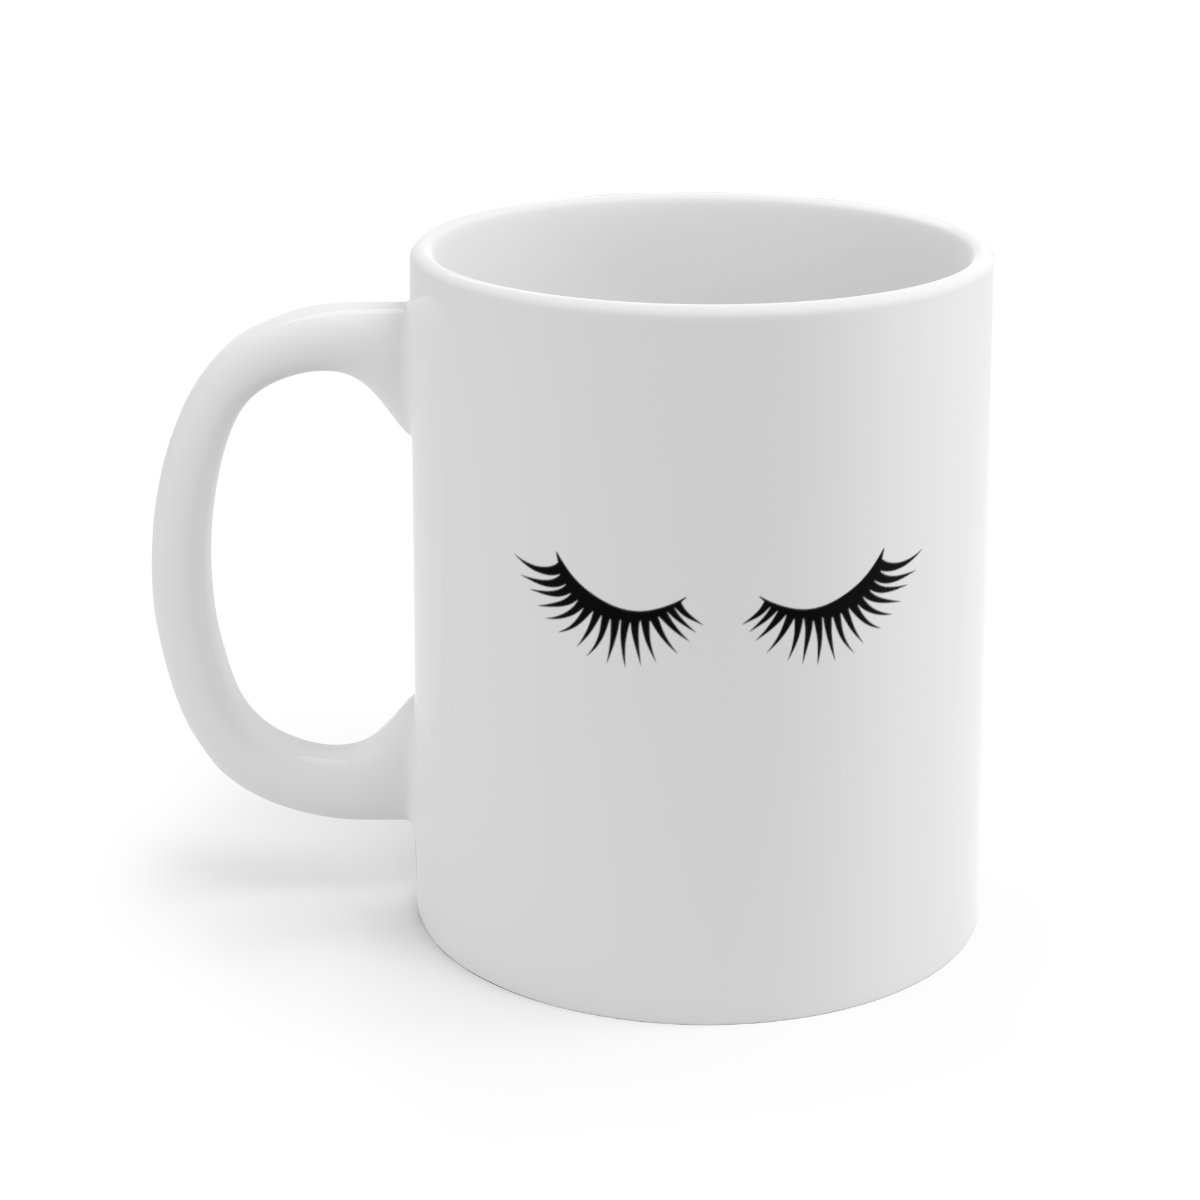 Shh... Coffee Mug